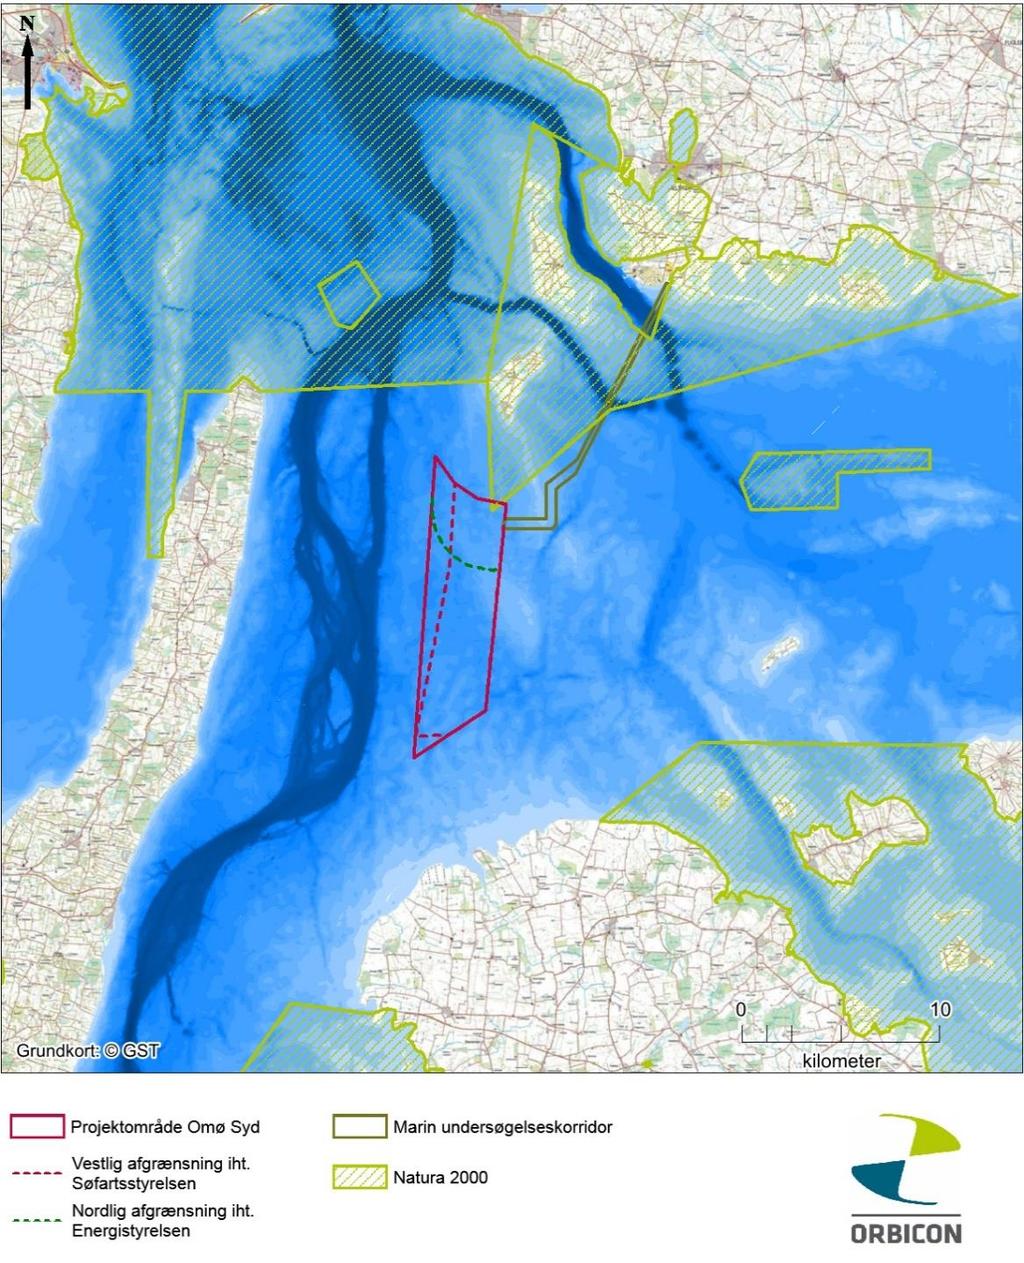 Figur 3.2.1 Oversigtskort med forundersøgelsesområde for Omø Syd kystnær Havmøllepark samt den reviderede vestlige afgrænsning jf. Søfartsstyrelsen og revideret nordlige afgrænsning jf.